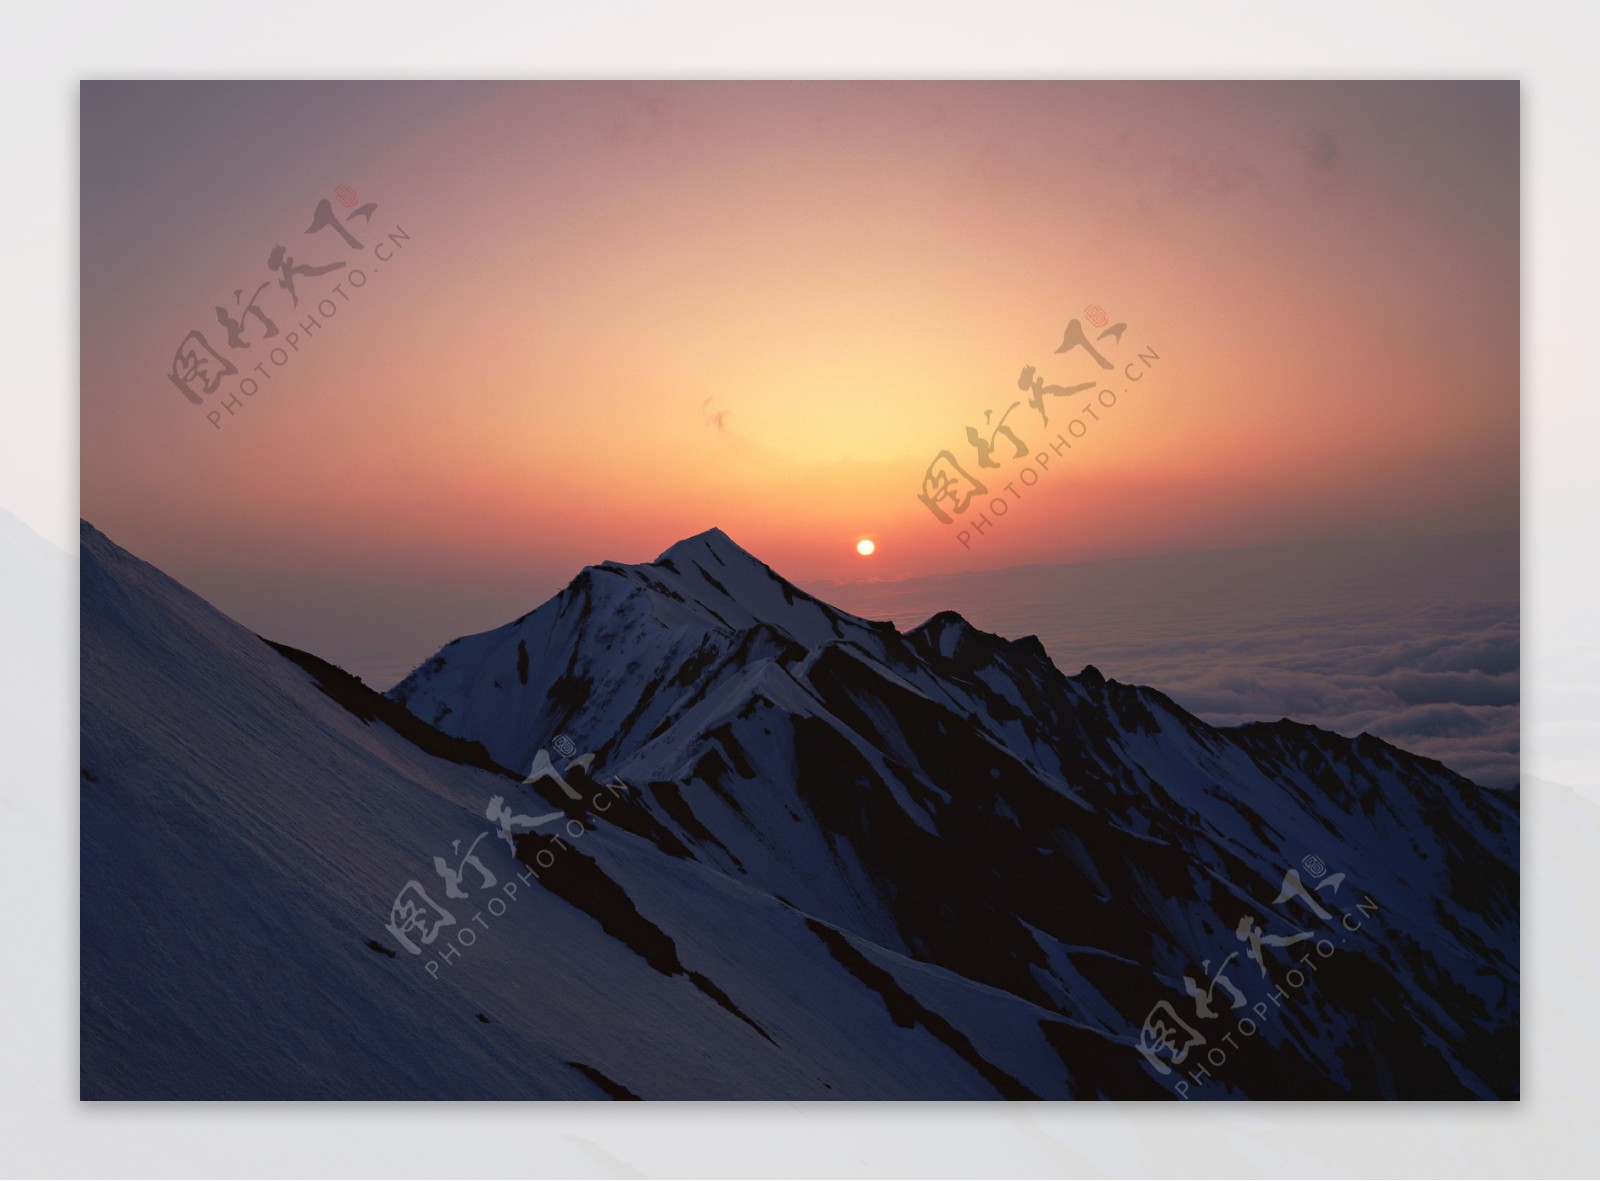 雪山与夕阳图片